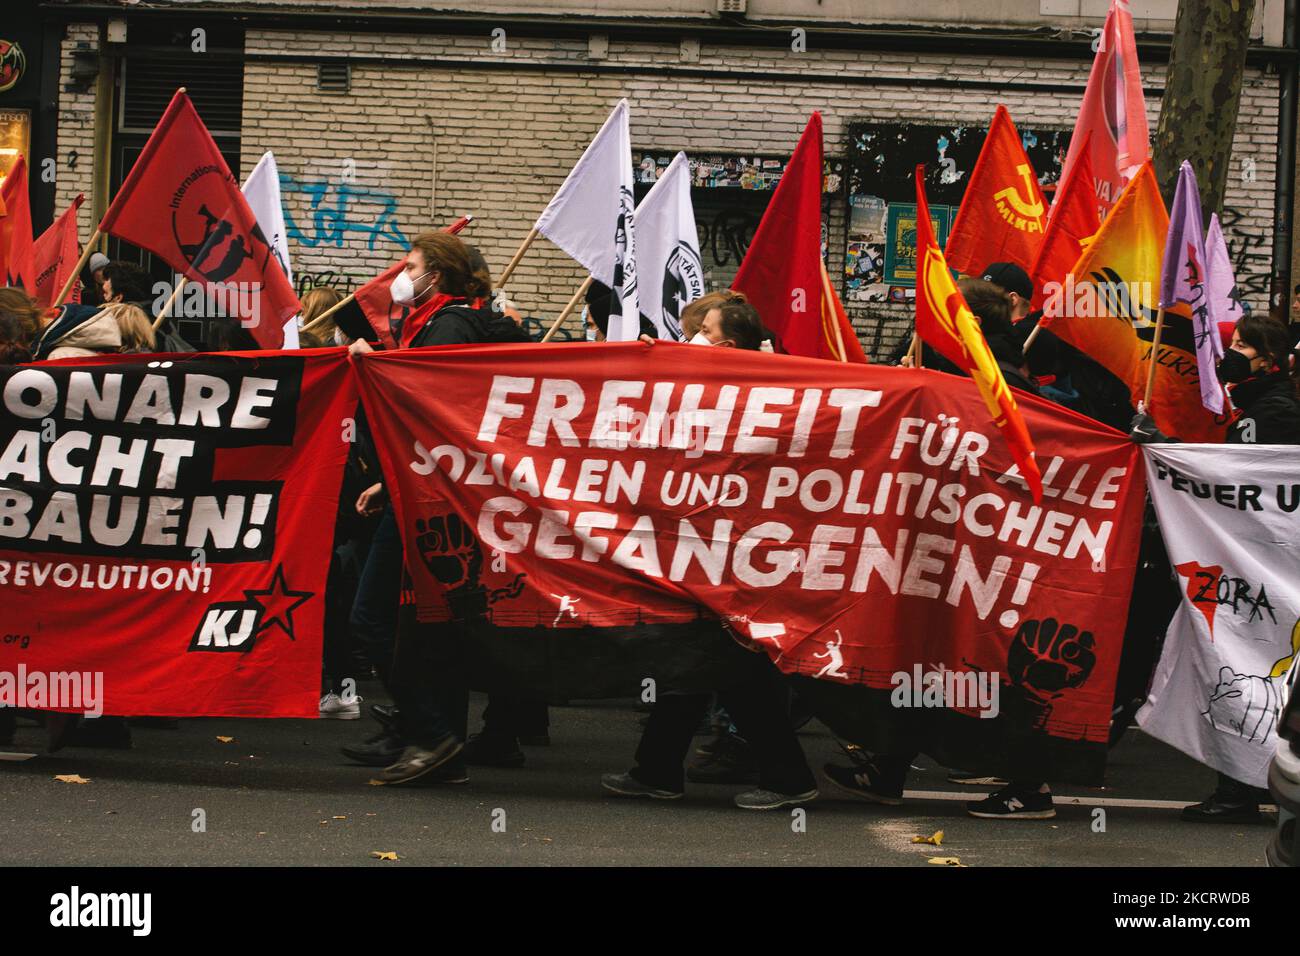 Visione generale della protesta contro la legge dell'Assemblea della NRW a Colonia, Germania il 30 ottobre 2021, poiché la legge della Nuova Assemblea della NRW è stata vista come un regolamento per limitare la libera Assemblea e la libertà di parola. (Foto di Ying Tang/NurPhoto) Foto Stock